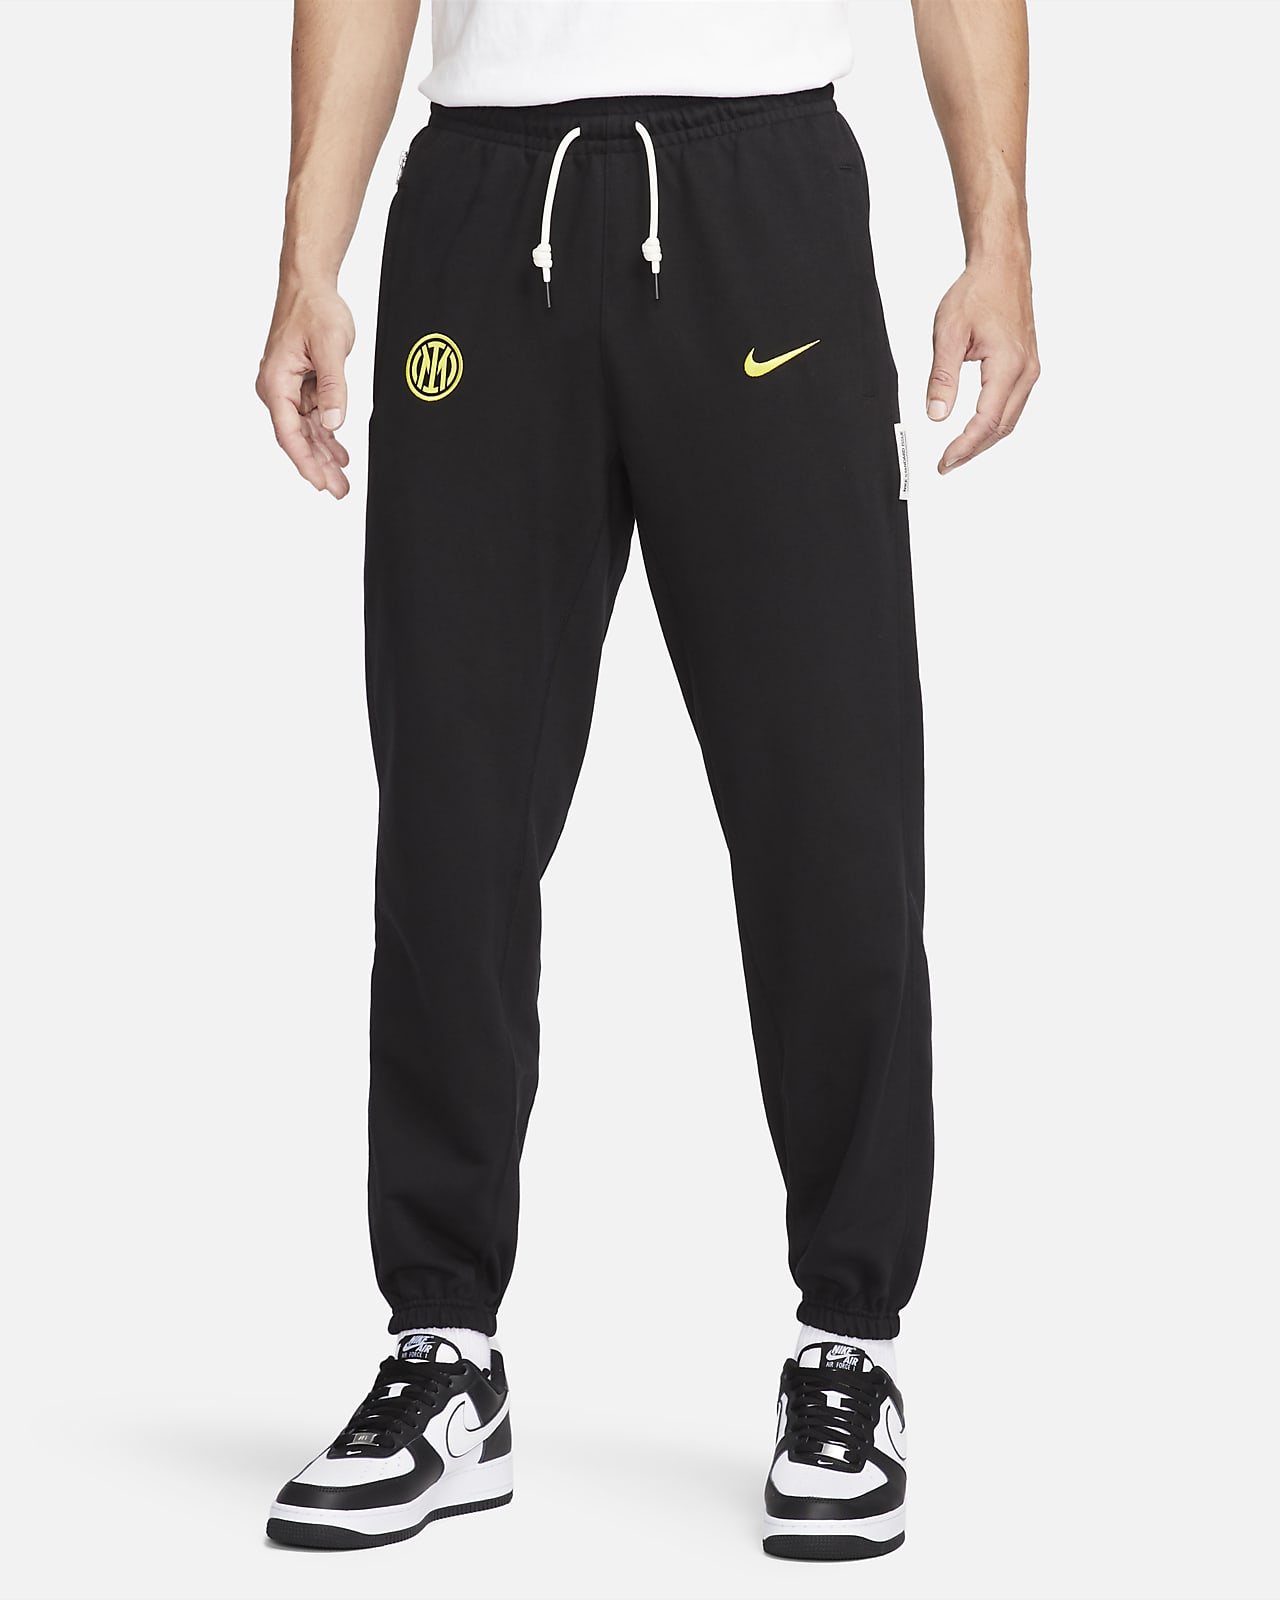 Inter Mailand Standard Issue Nike Fußballhose für Herren